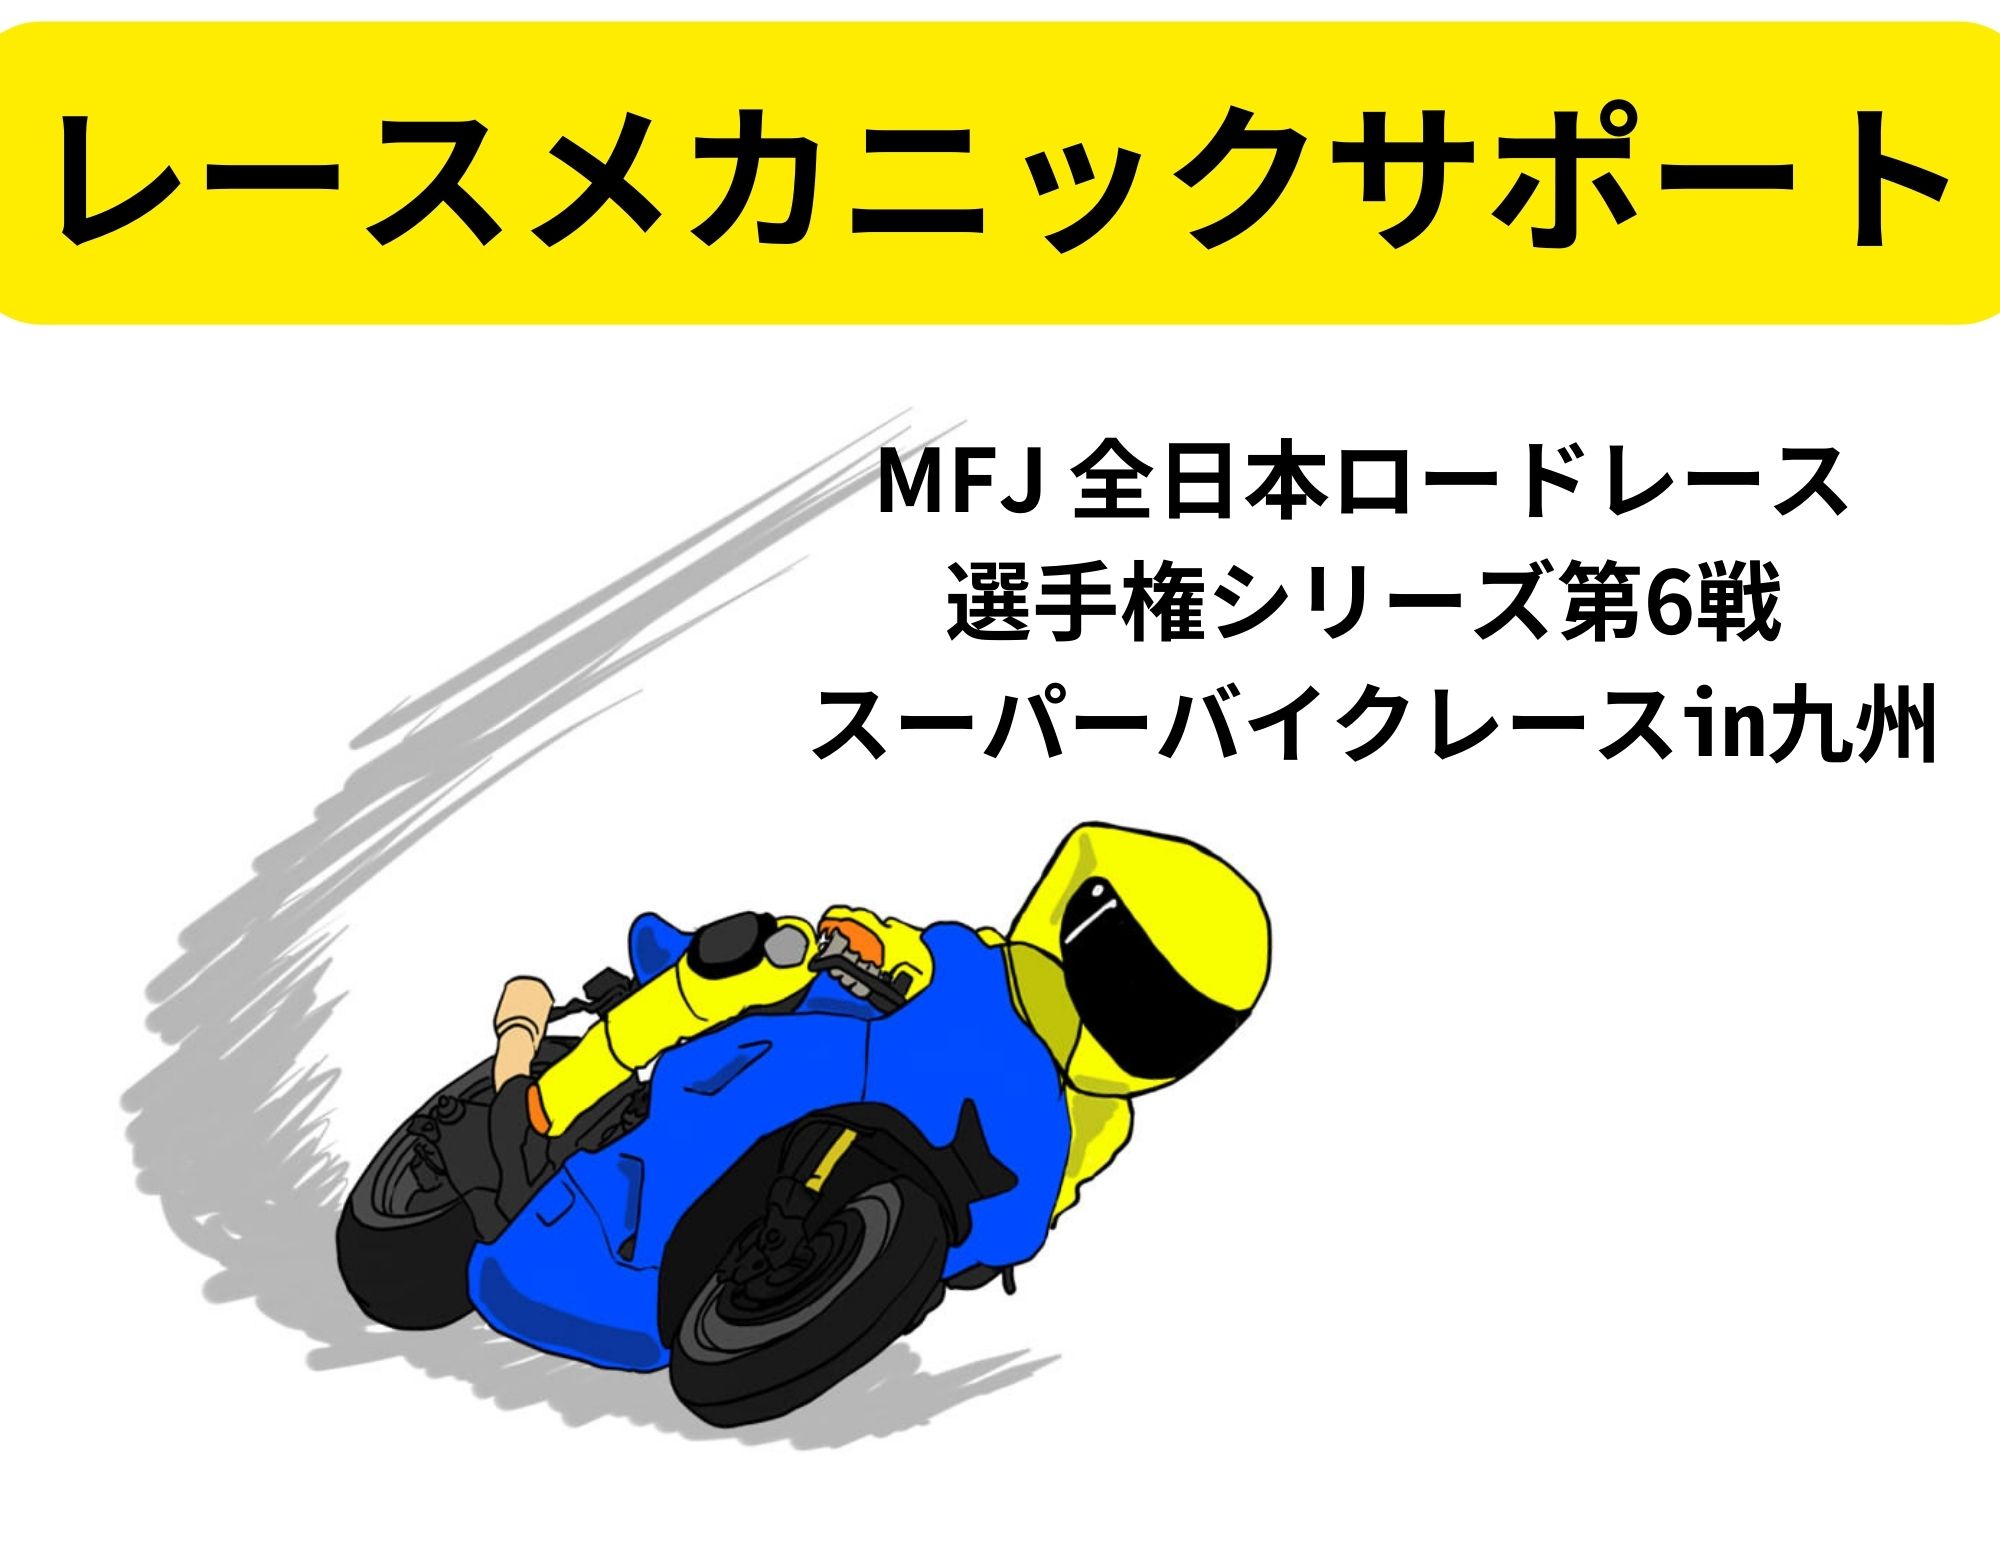 【同好会】二輪整備同好会 スーパーバイクレースのメカニックサポート